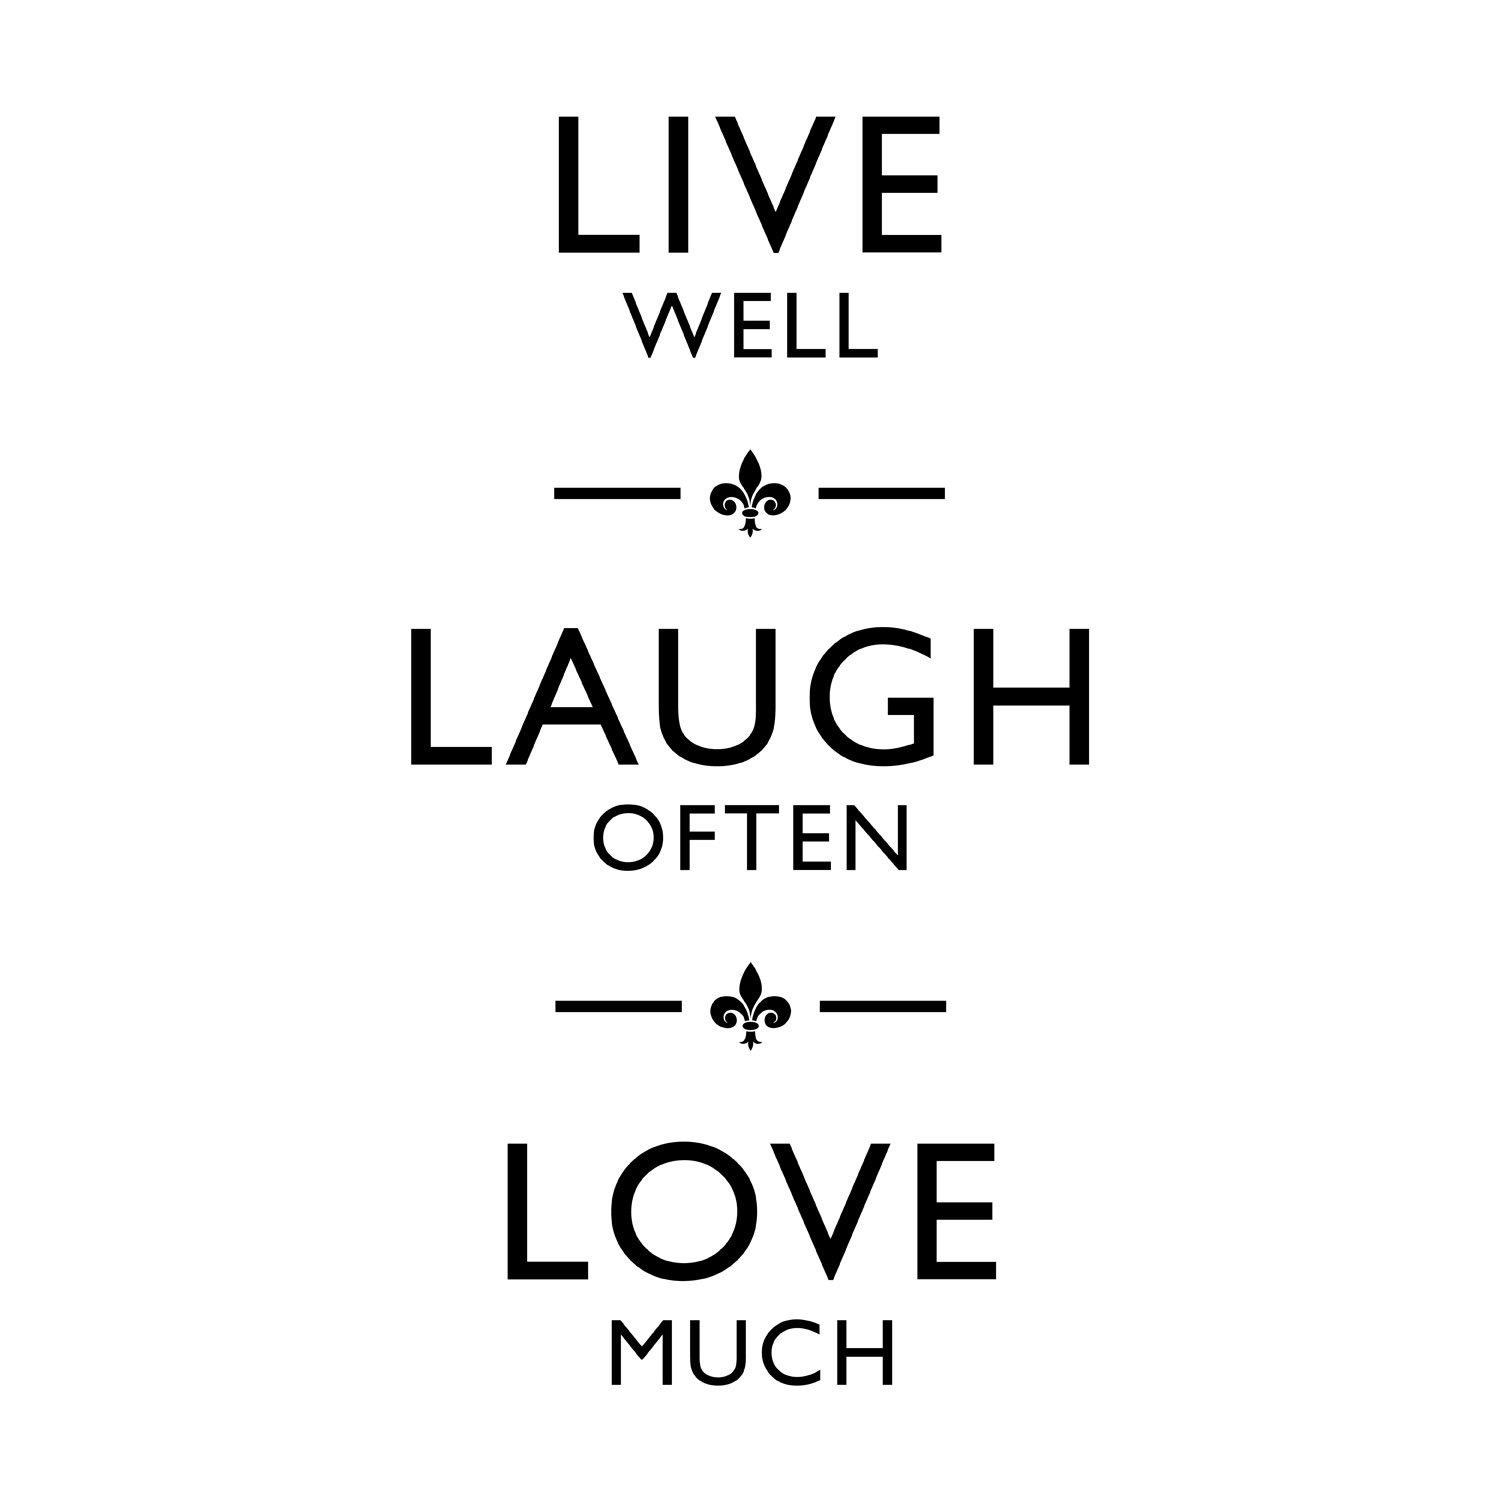 Live Laugh Love Quote Wallpaper